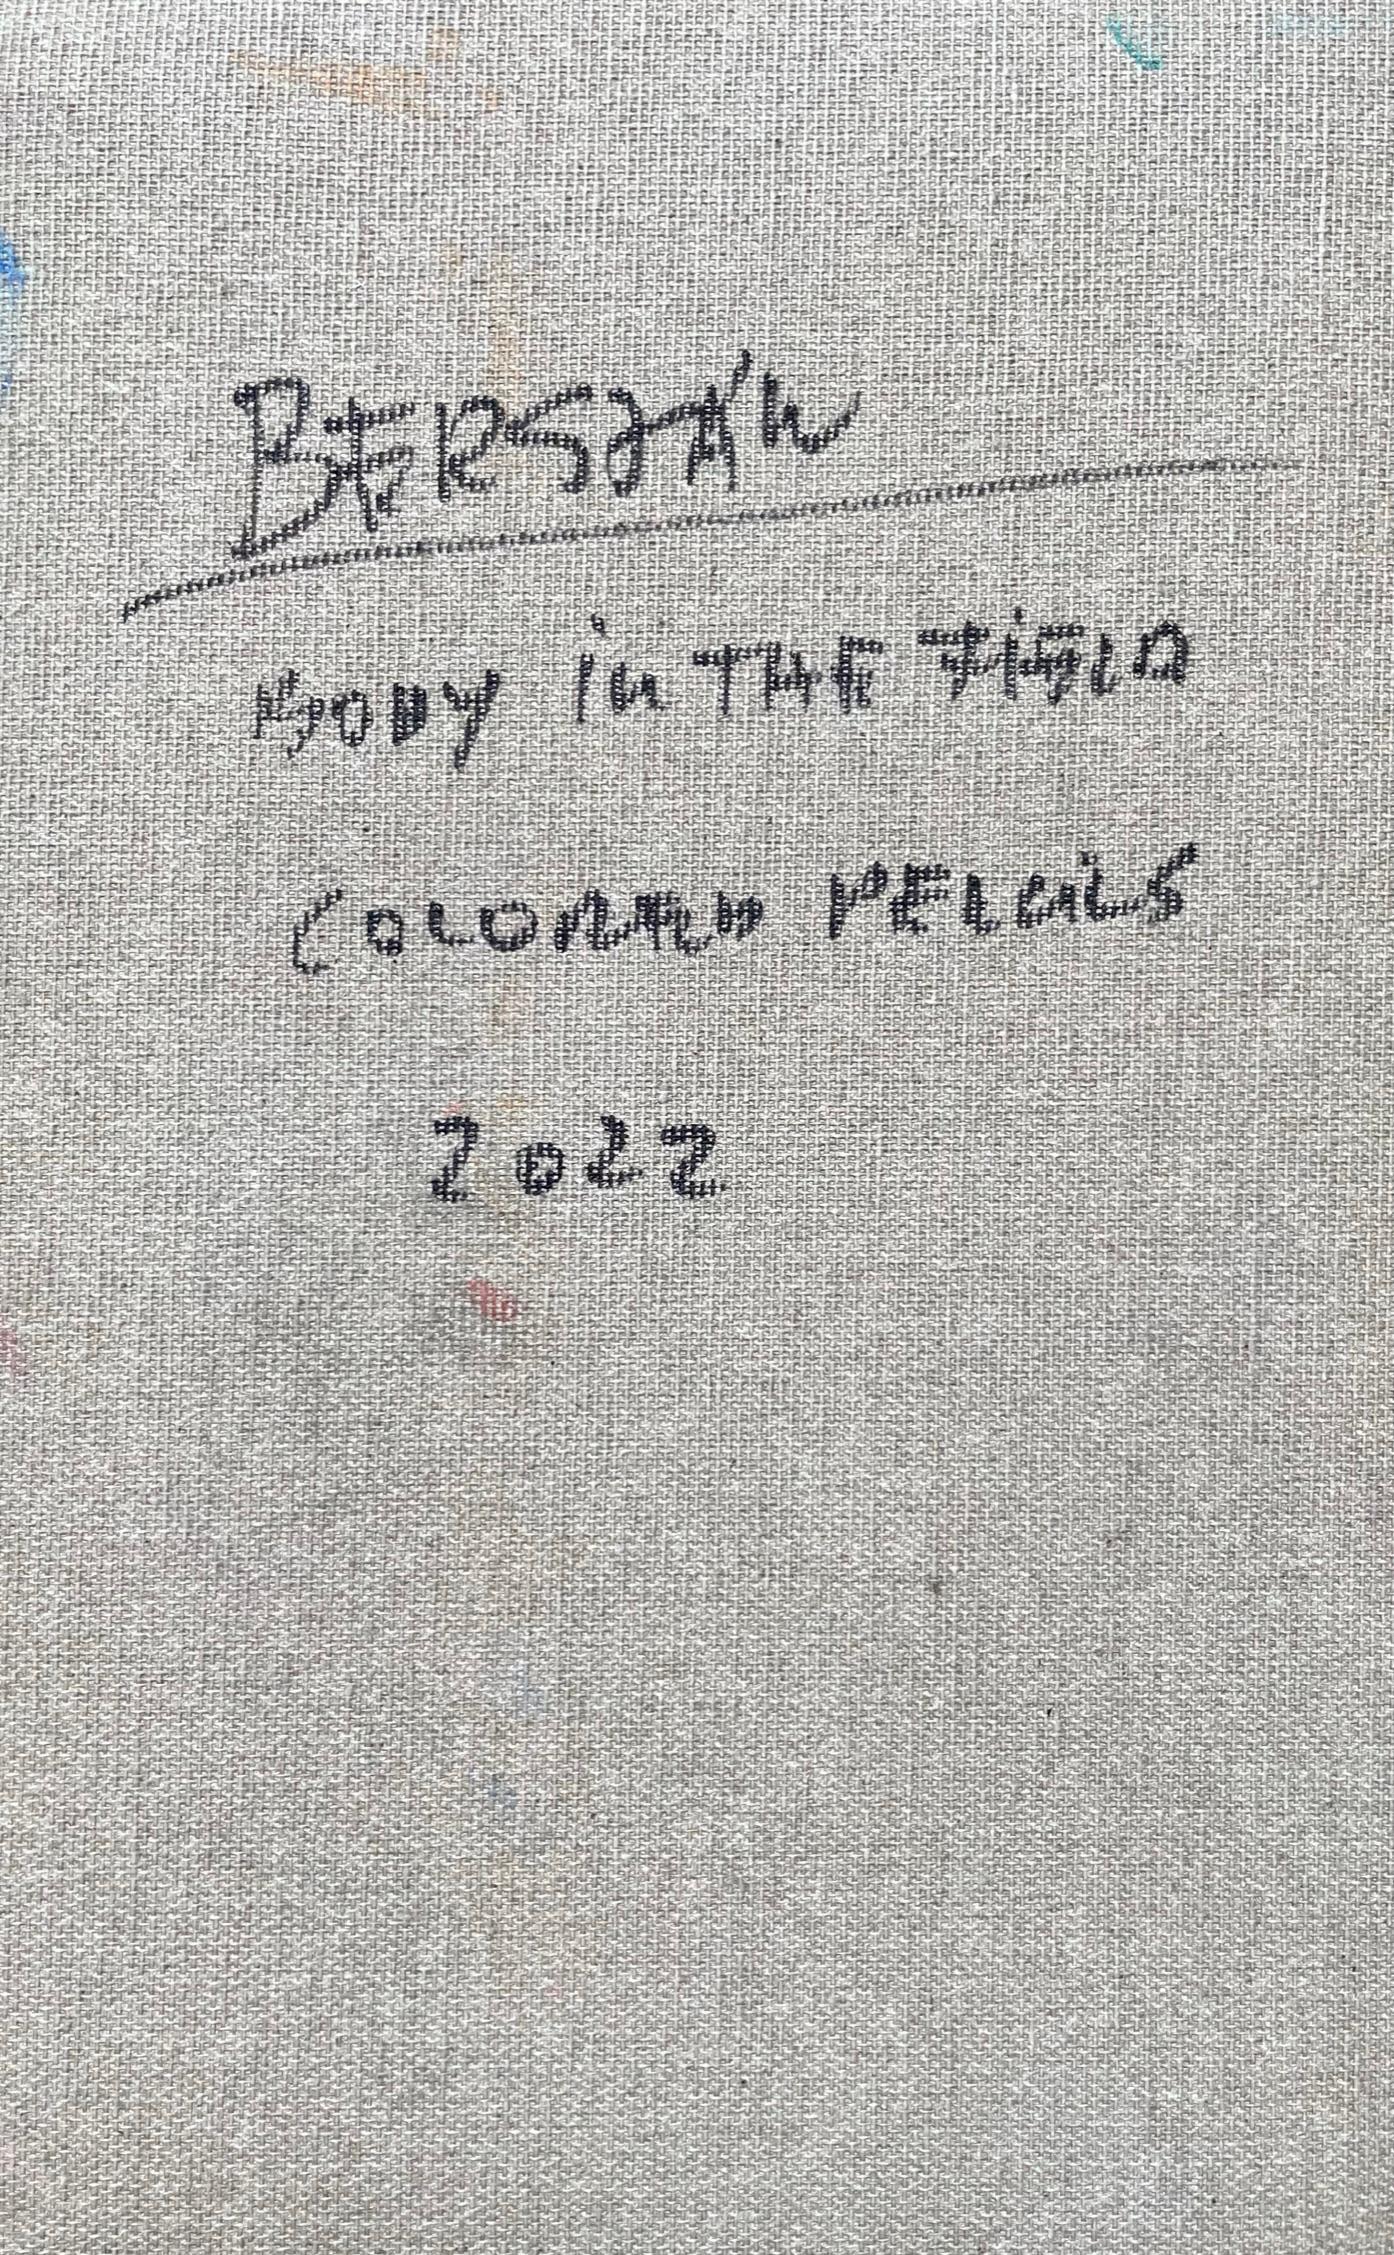 Leiche auf dem Feld #7, 2022
Farbstift auf Leinwand
9,84 H x 6,29 W Zoll.
25 H x 16 B cm
Signiert auf der Rückseite

Zsolt Berszán verkörpert in seinen Werken die Auflösung des menschlichen Körpers durch das Prisma des Fragments, des zerteilten